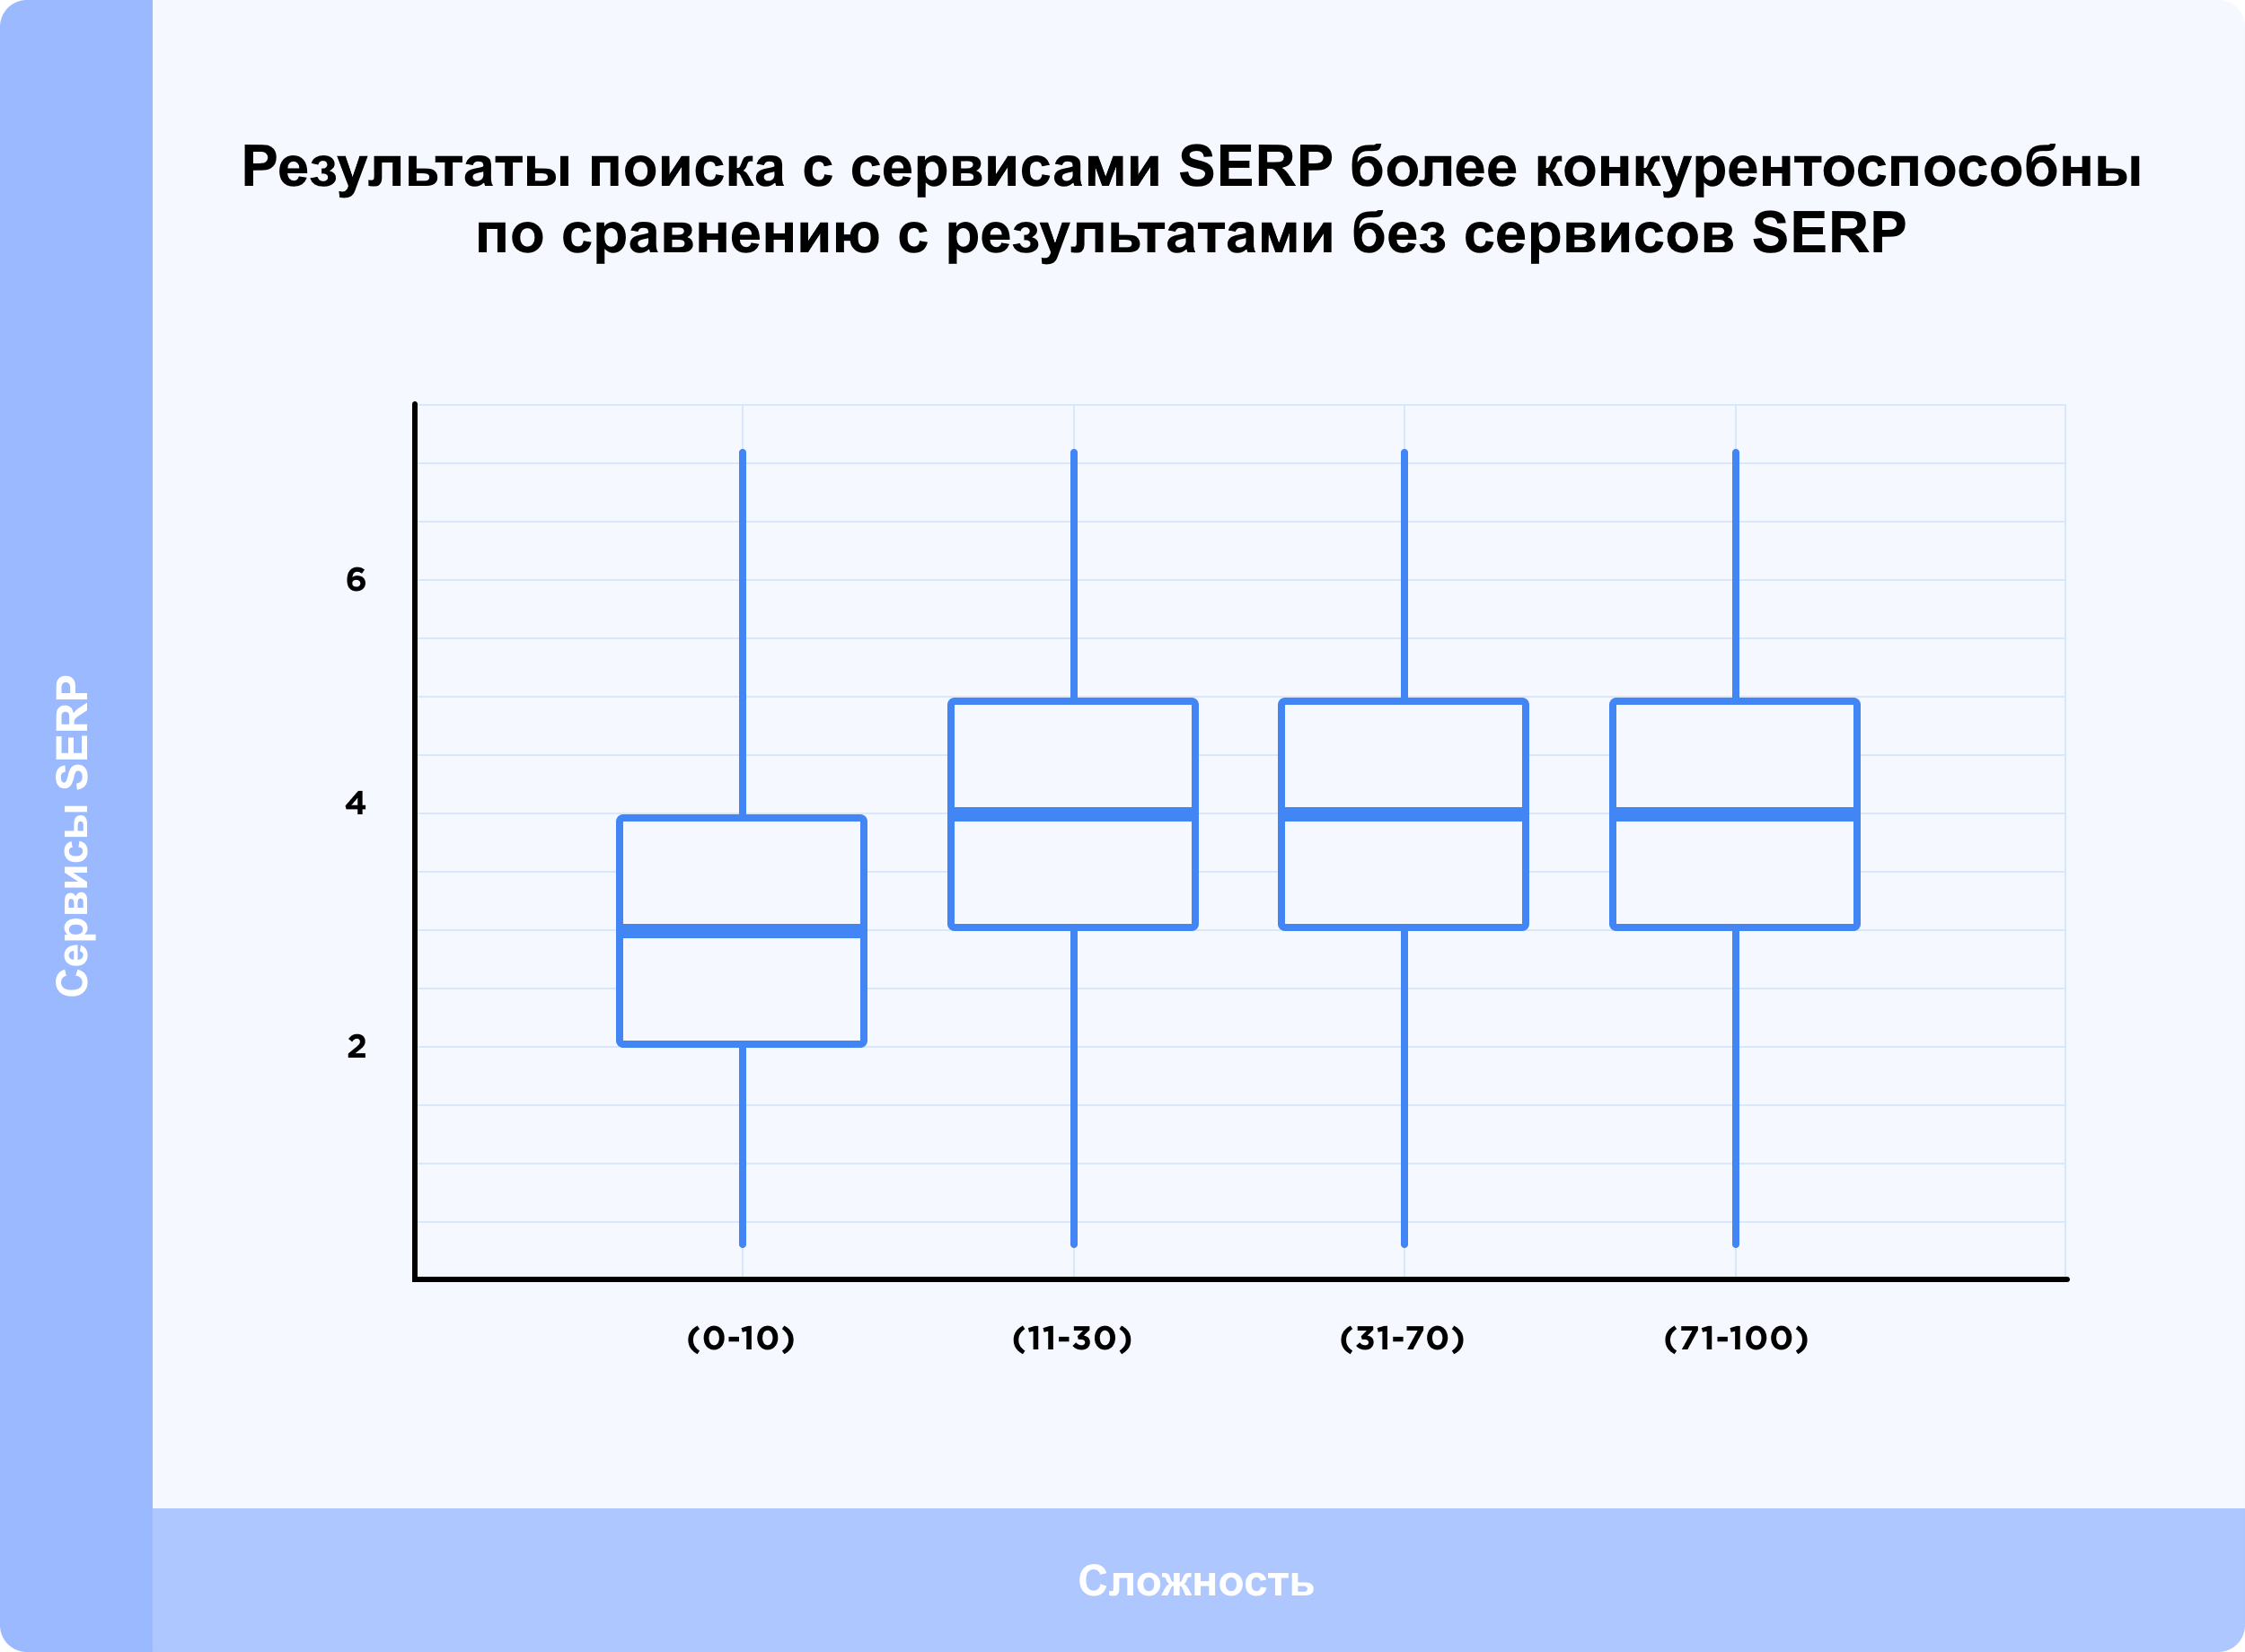 Результаты поиска с сервисами SERP более конкурентноспособны по сравнению с результатами без сервисов SERP